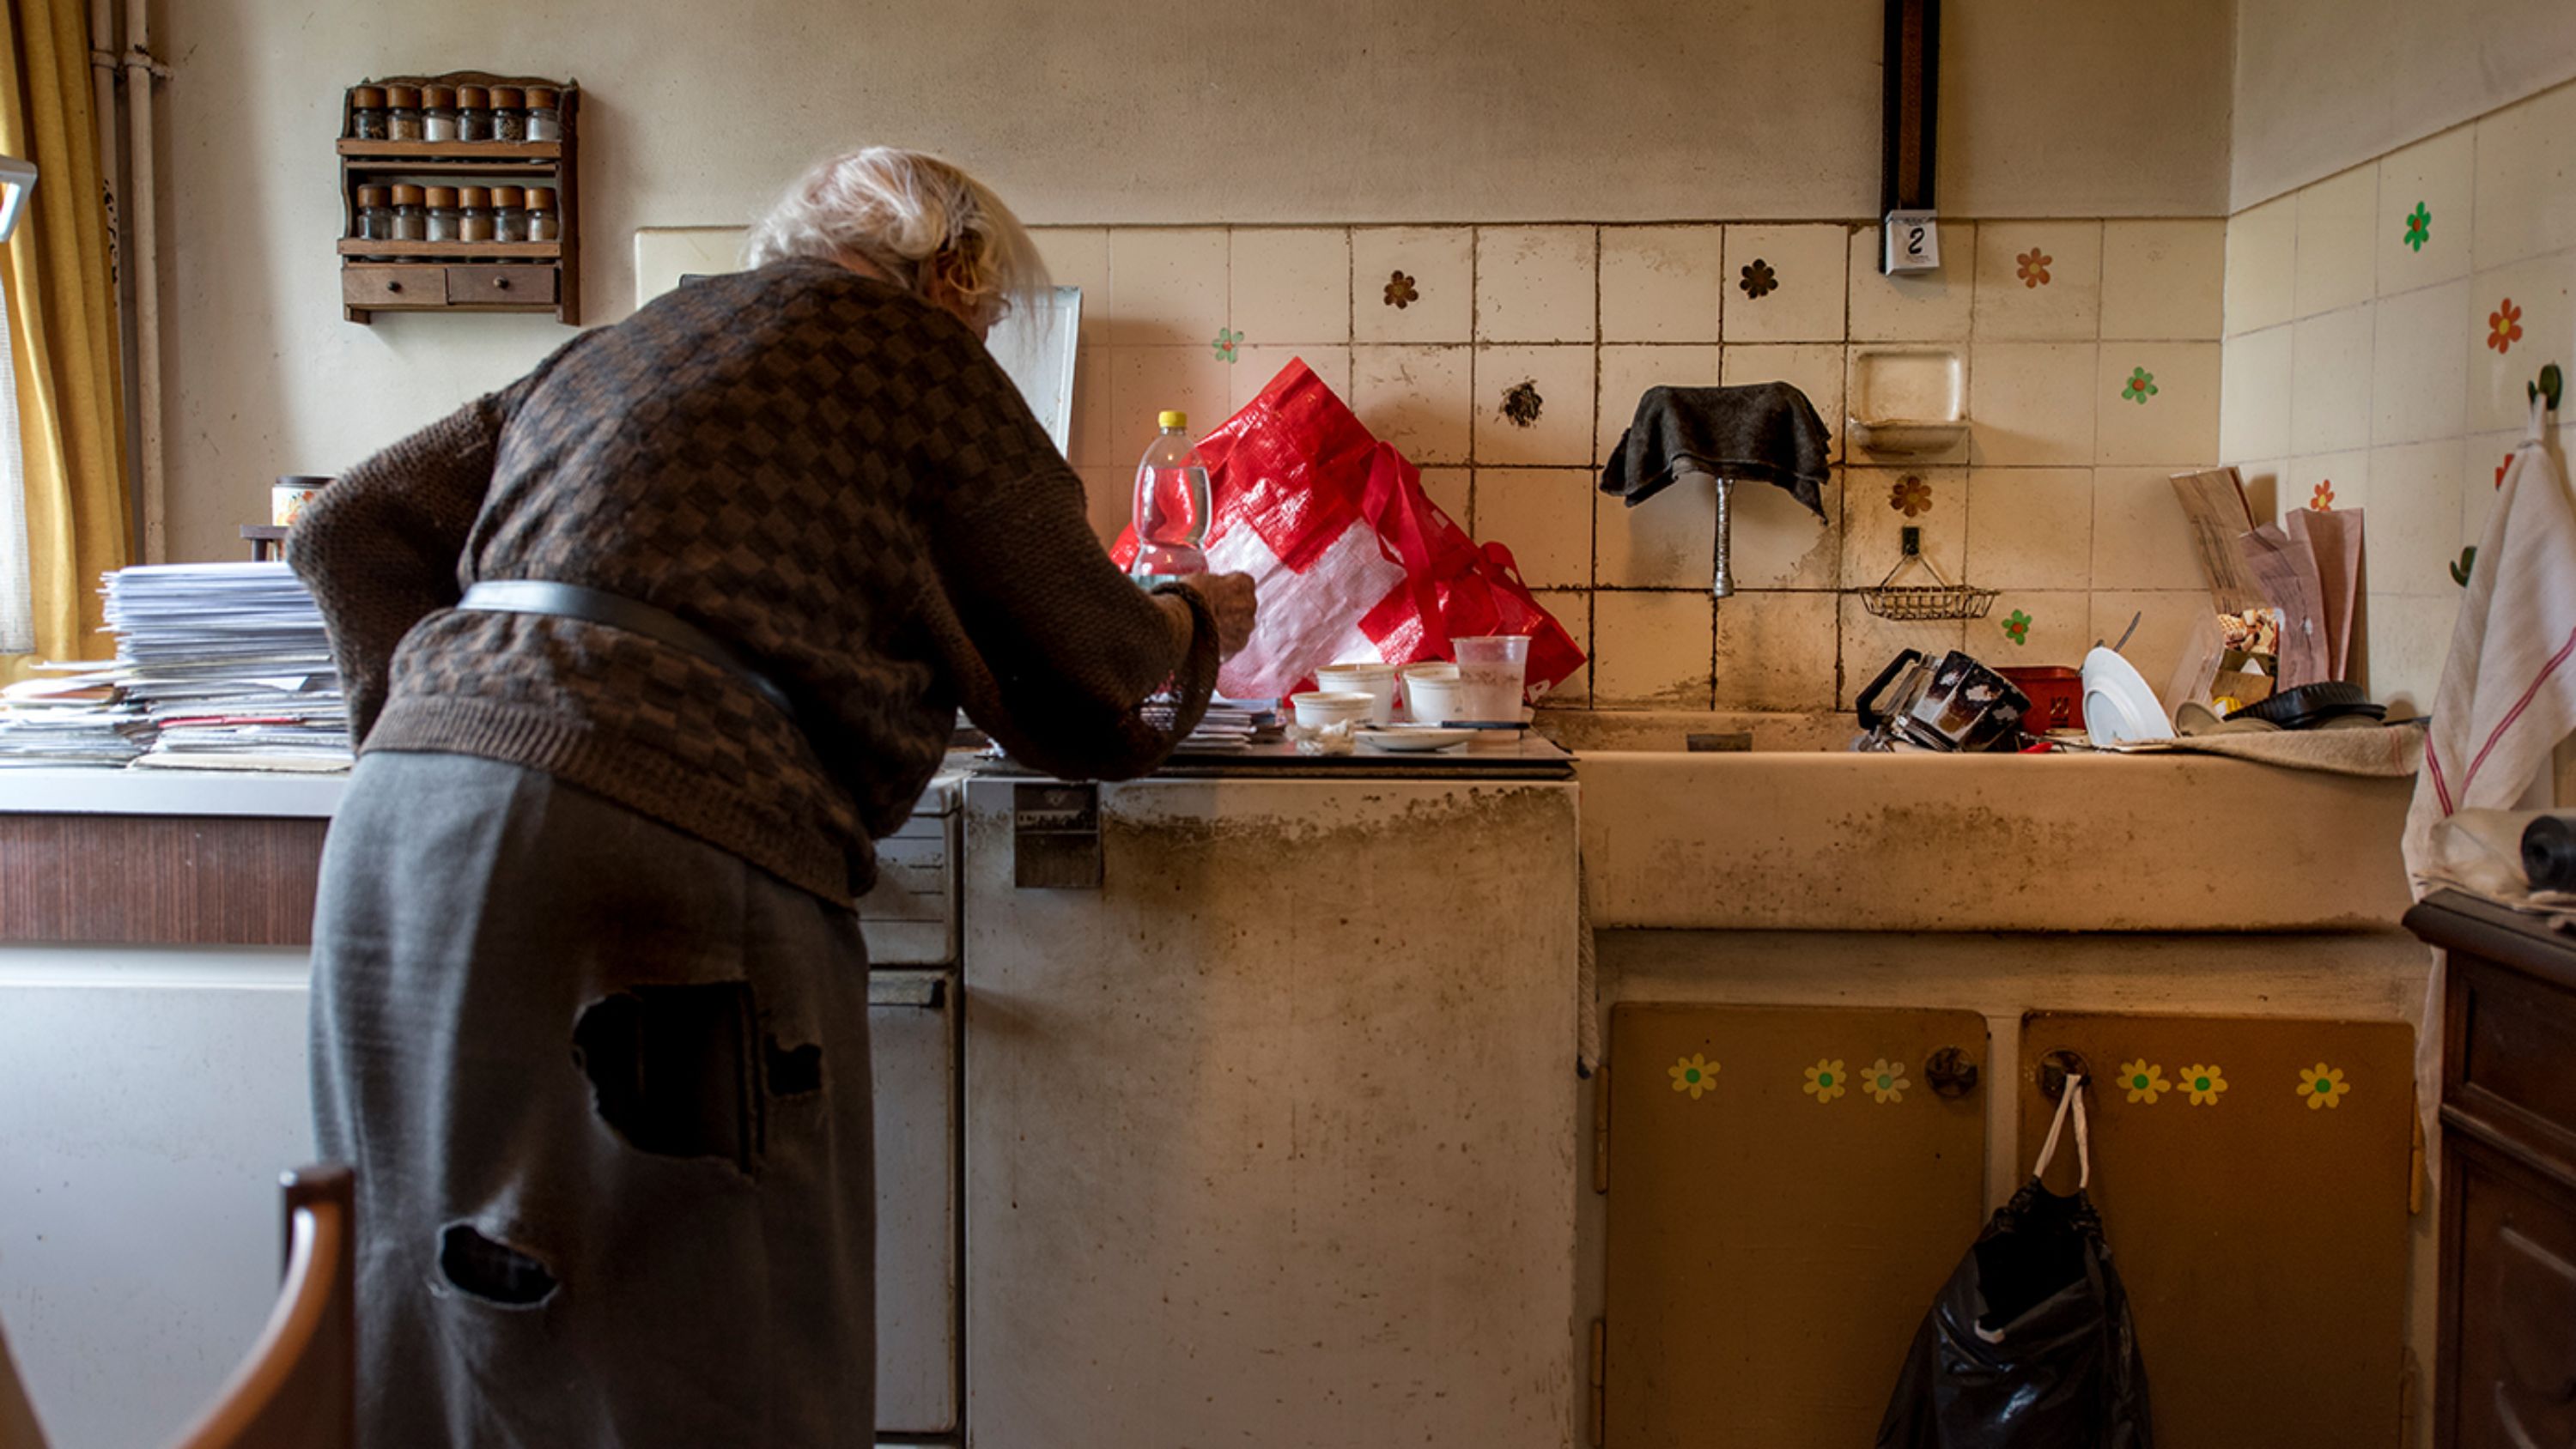 Una donna anziana che vive in povertà si china su un mobile della cucina.